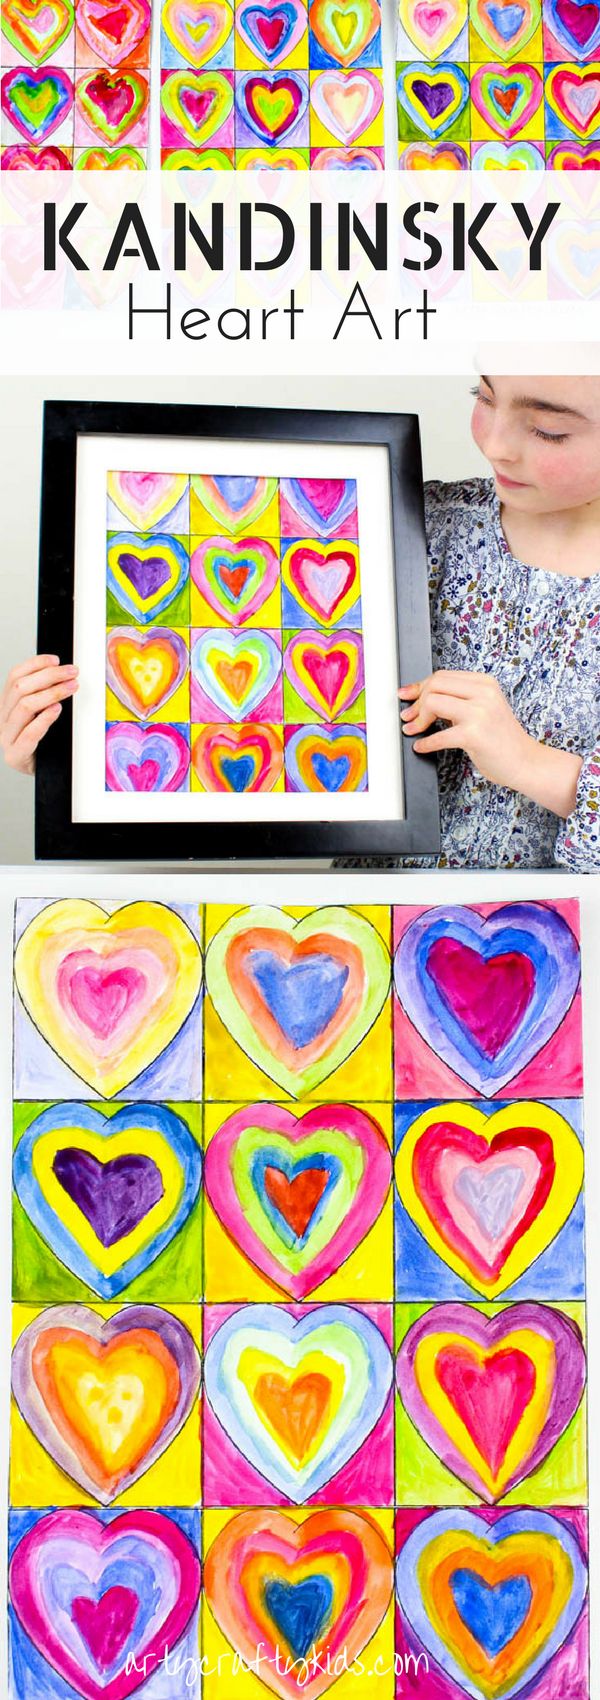 Arty Crafty Kids | Art for Kids | Kandinsky Inspired Heart Art | Inspired by Kan...